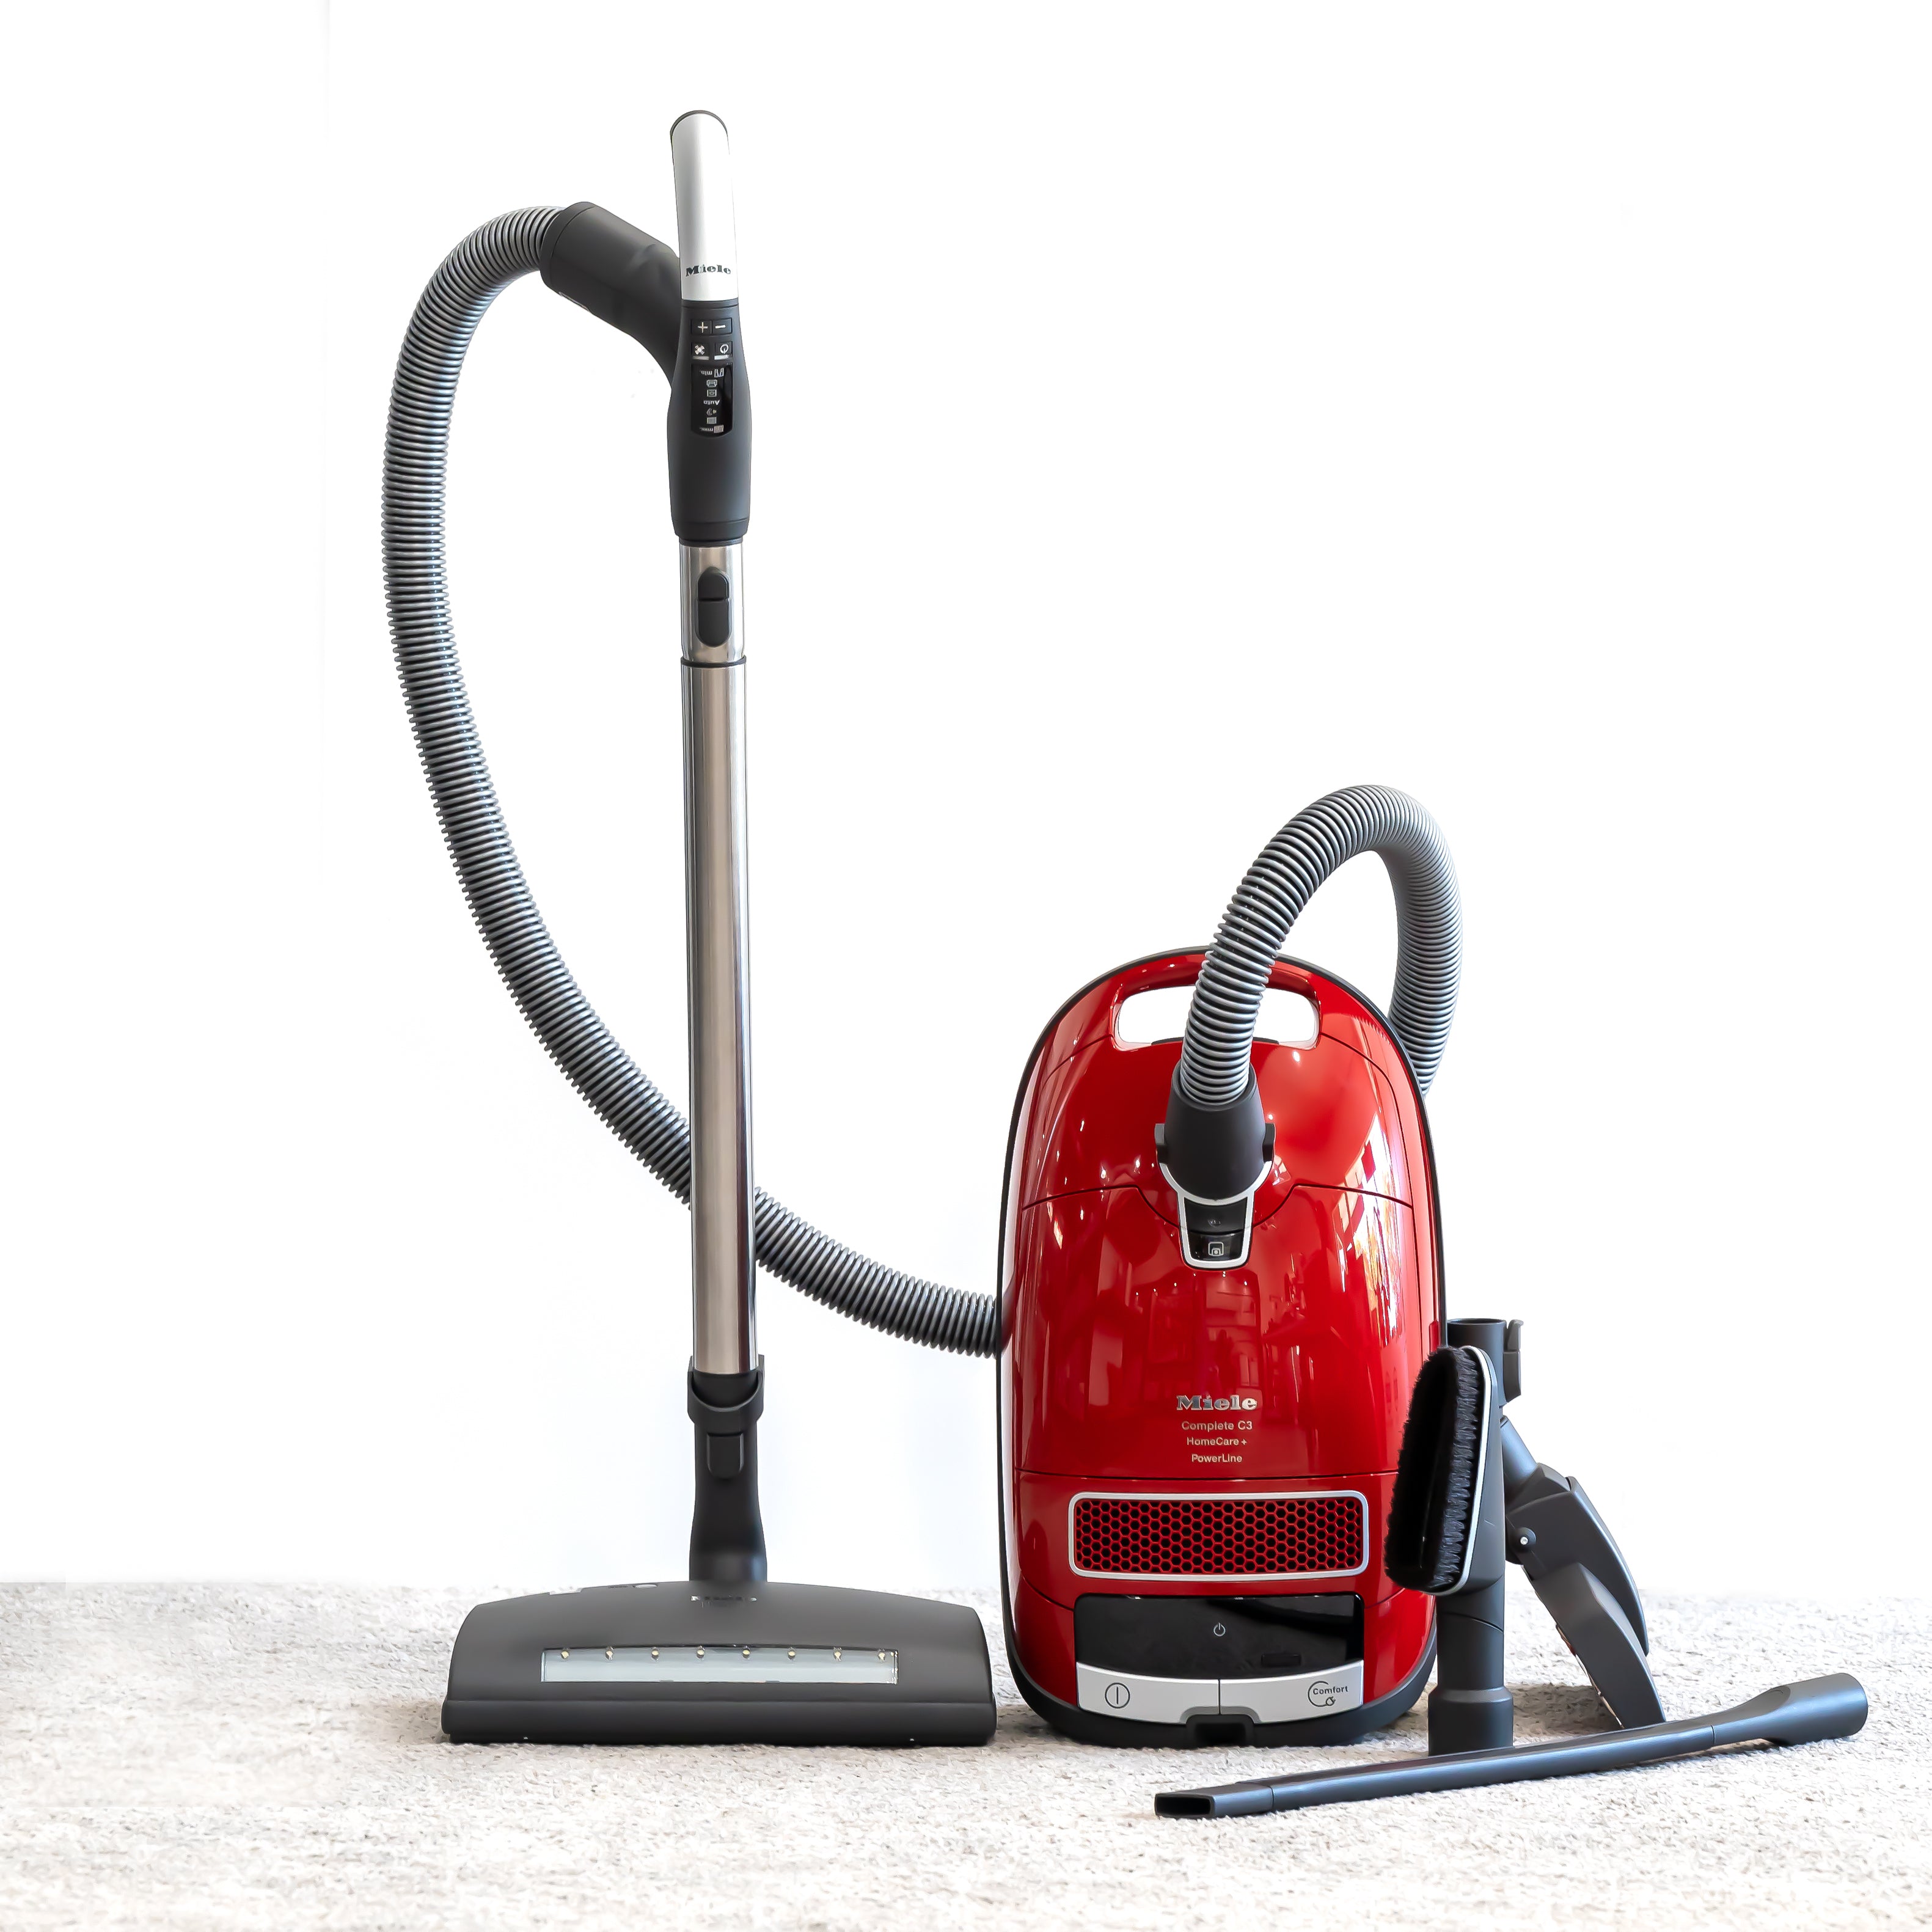 Versterken Intrekking Collega Miele Complete C3 HomeCare+ – All Things Clean Vacuum & Appliance